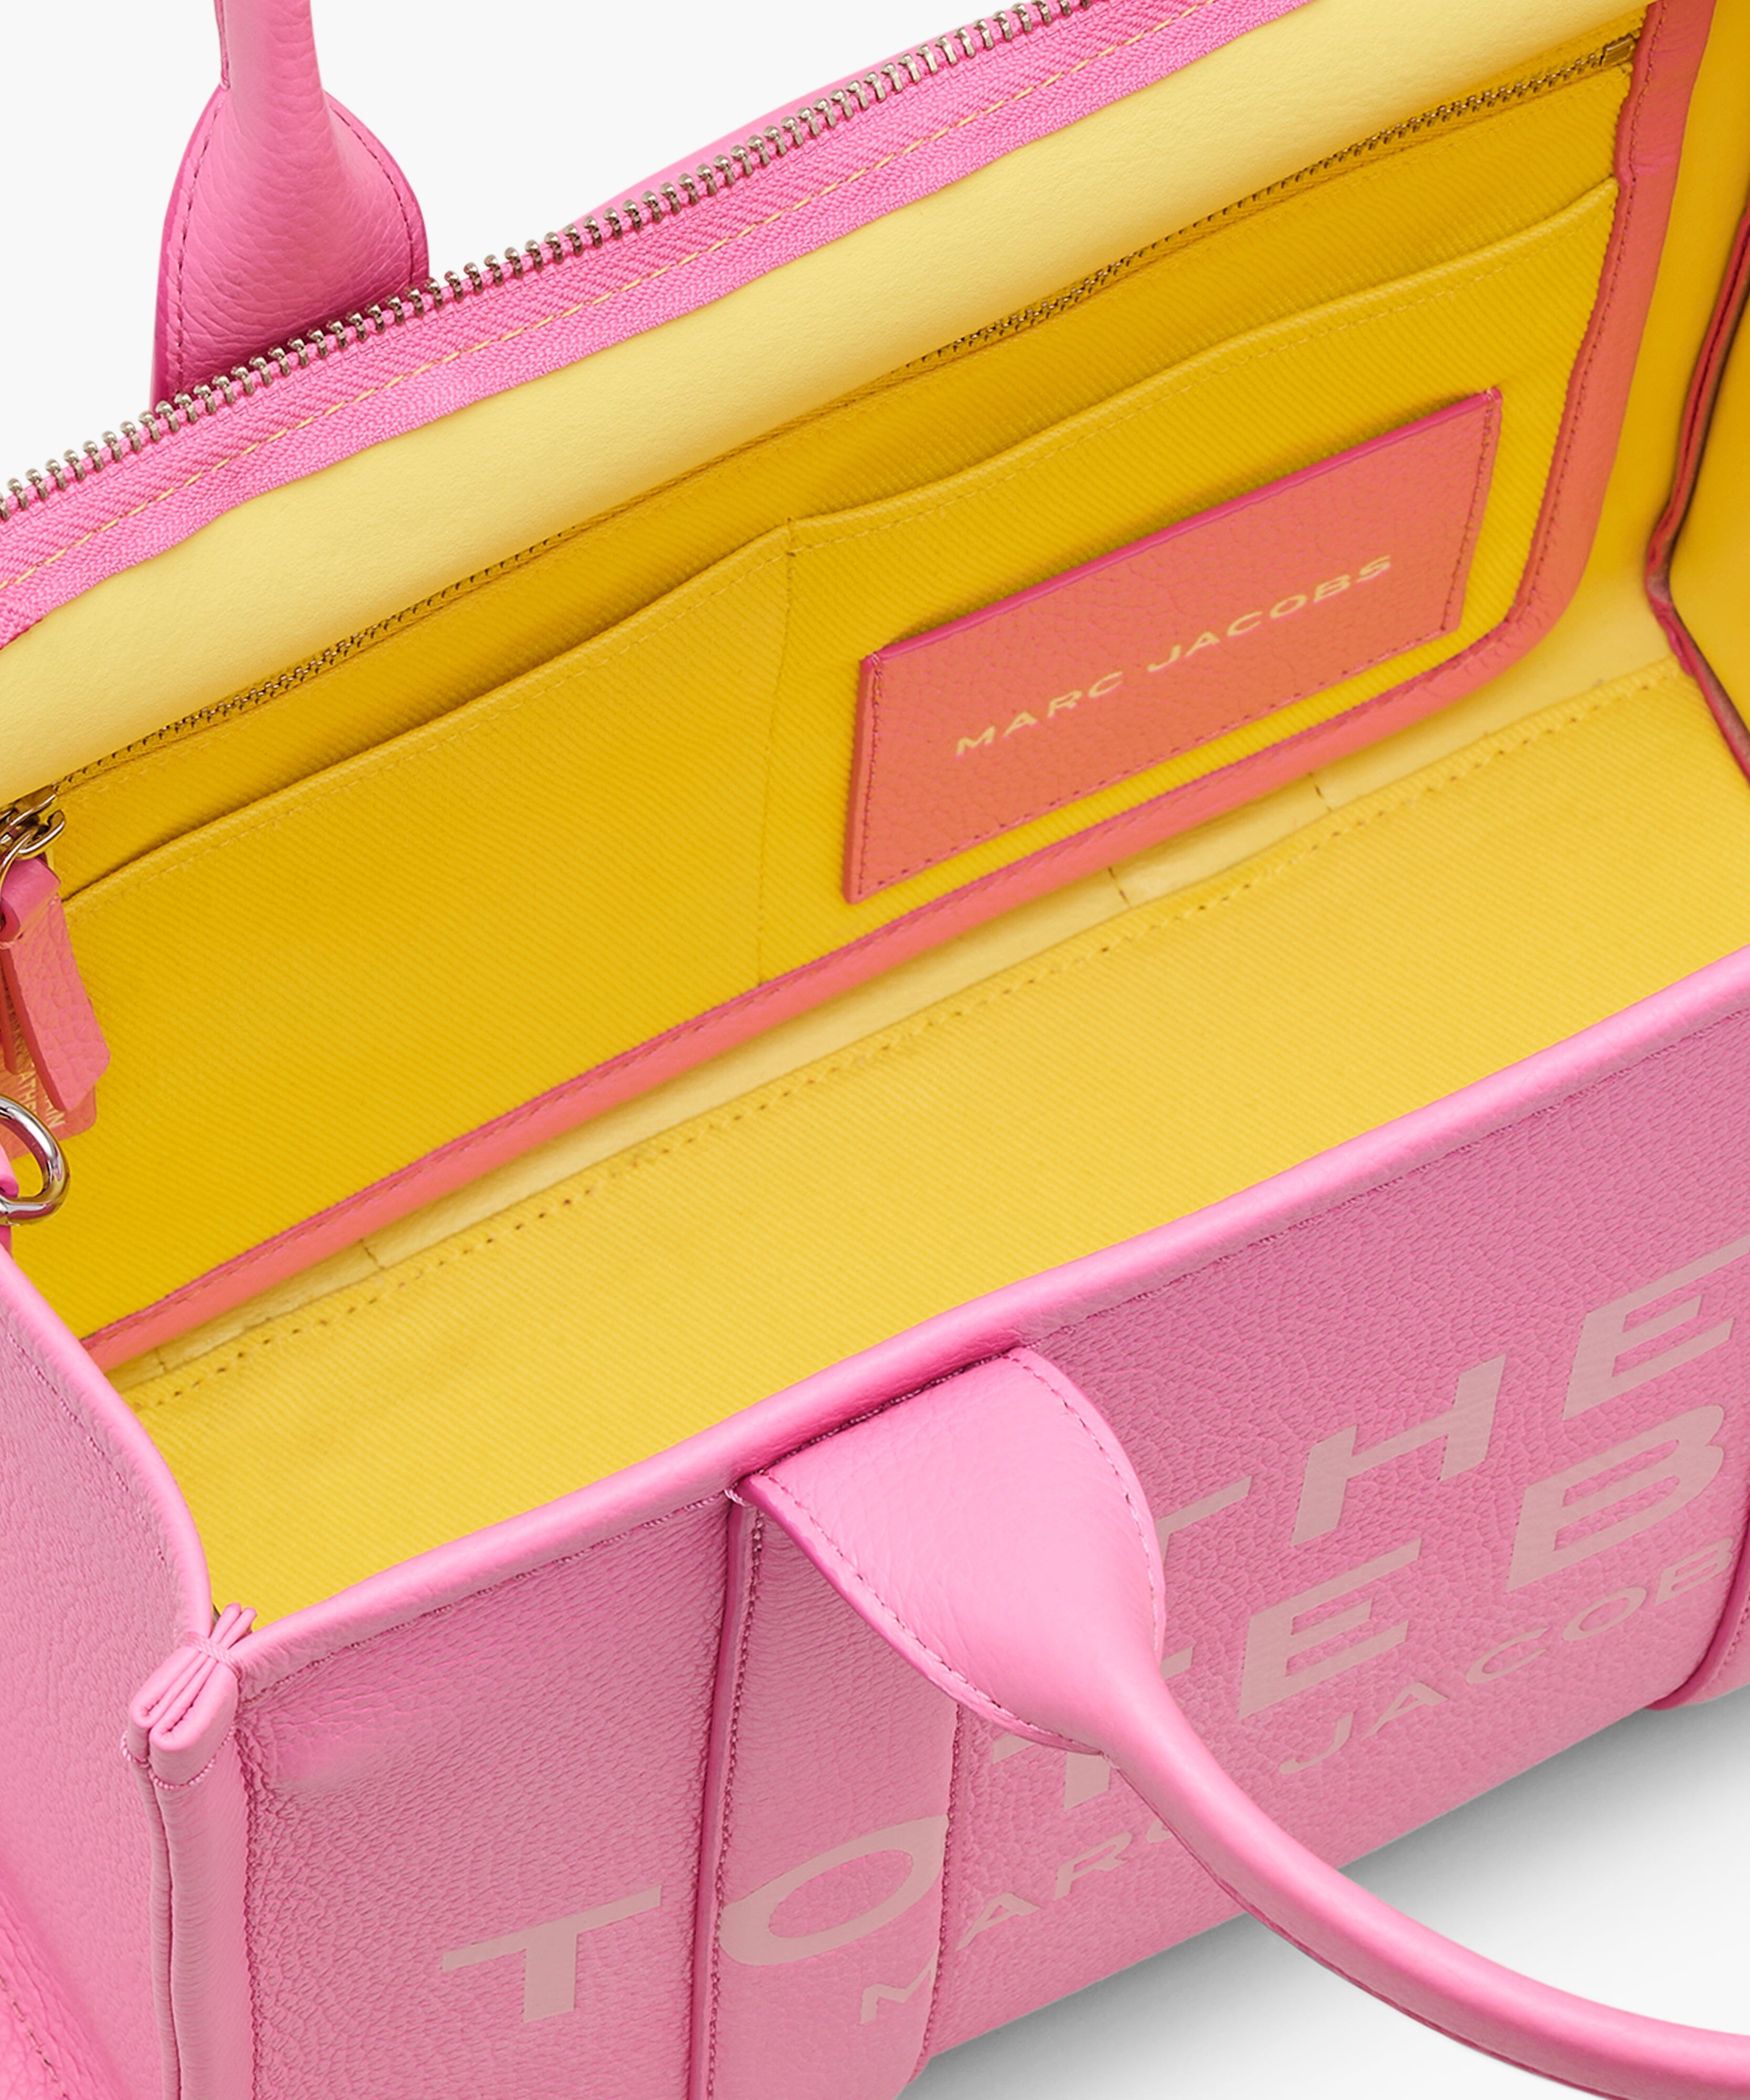 MARC JACOBS - Medium Tote Bag H004L01PF21-666 - Petal Pink Borse Marc Jacobs 